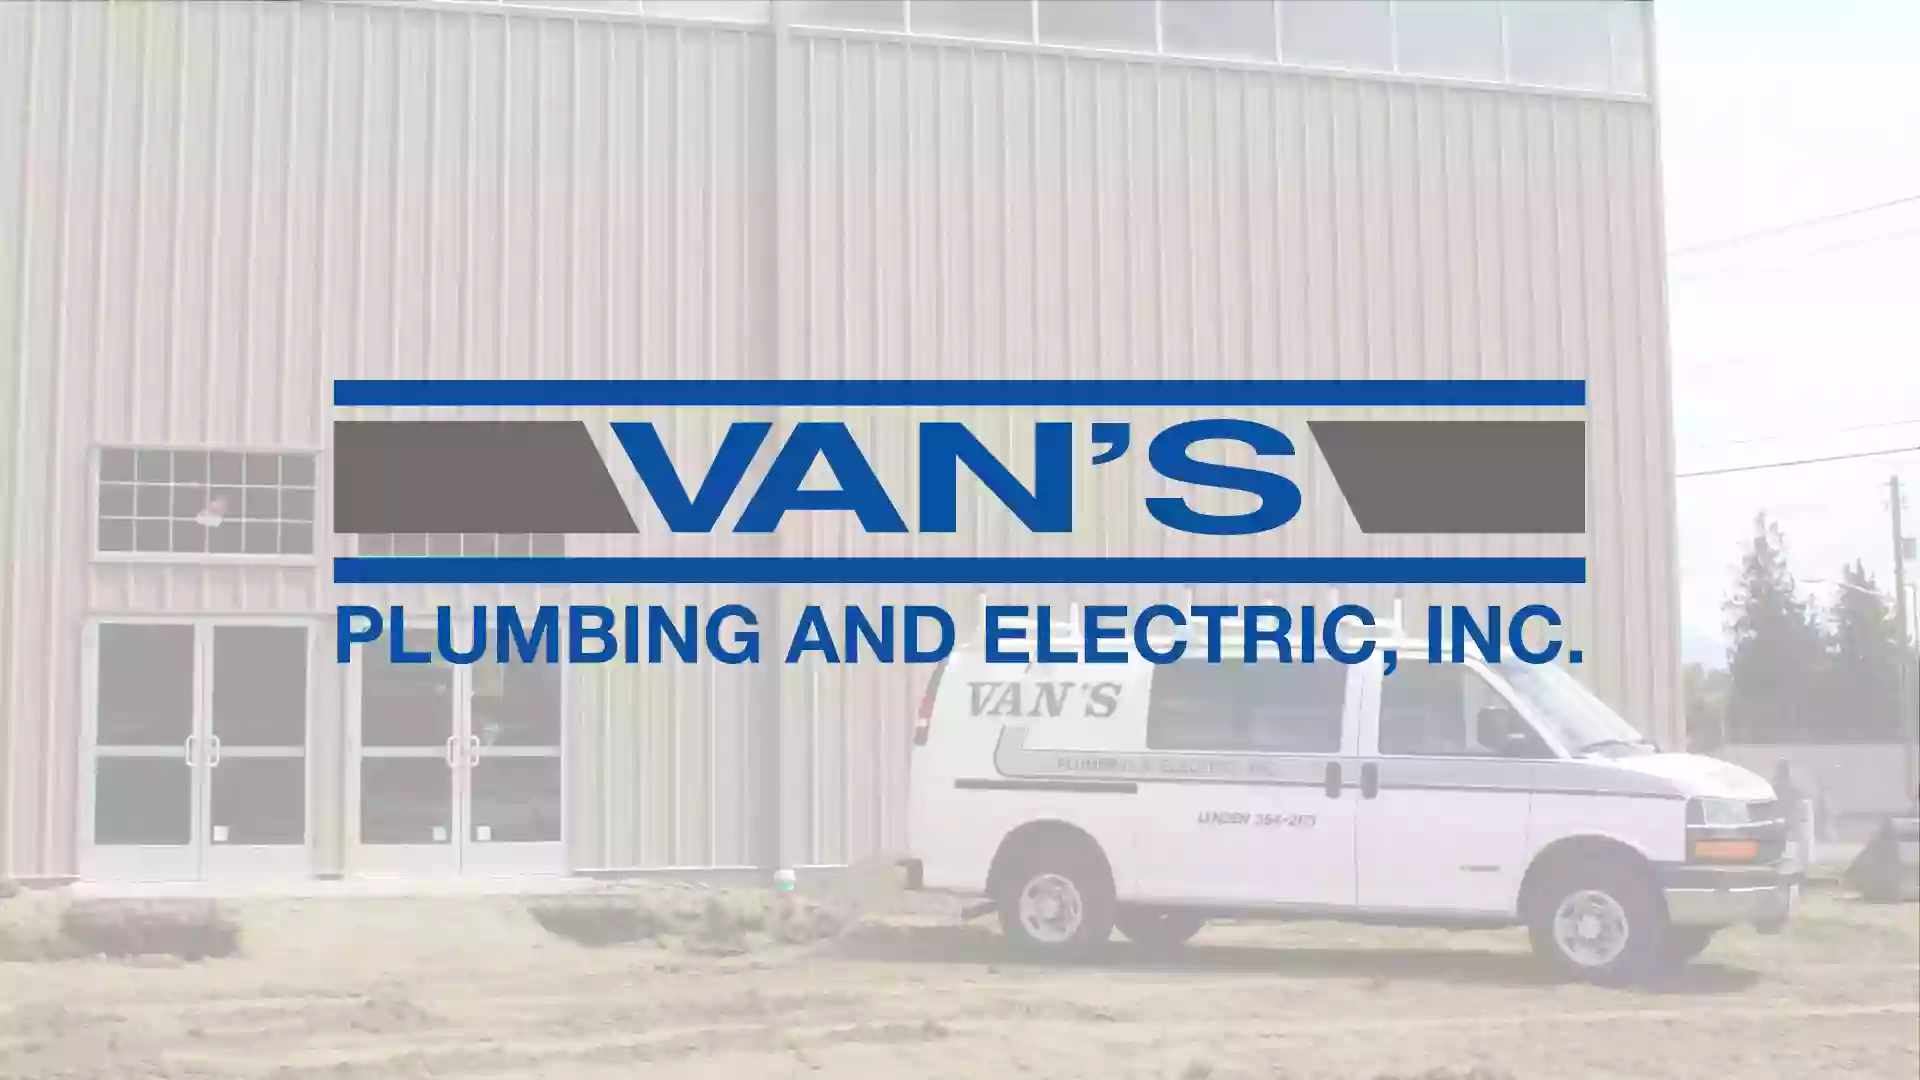 Van's Plumbing and Electric, Inc.